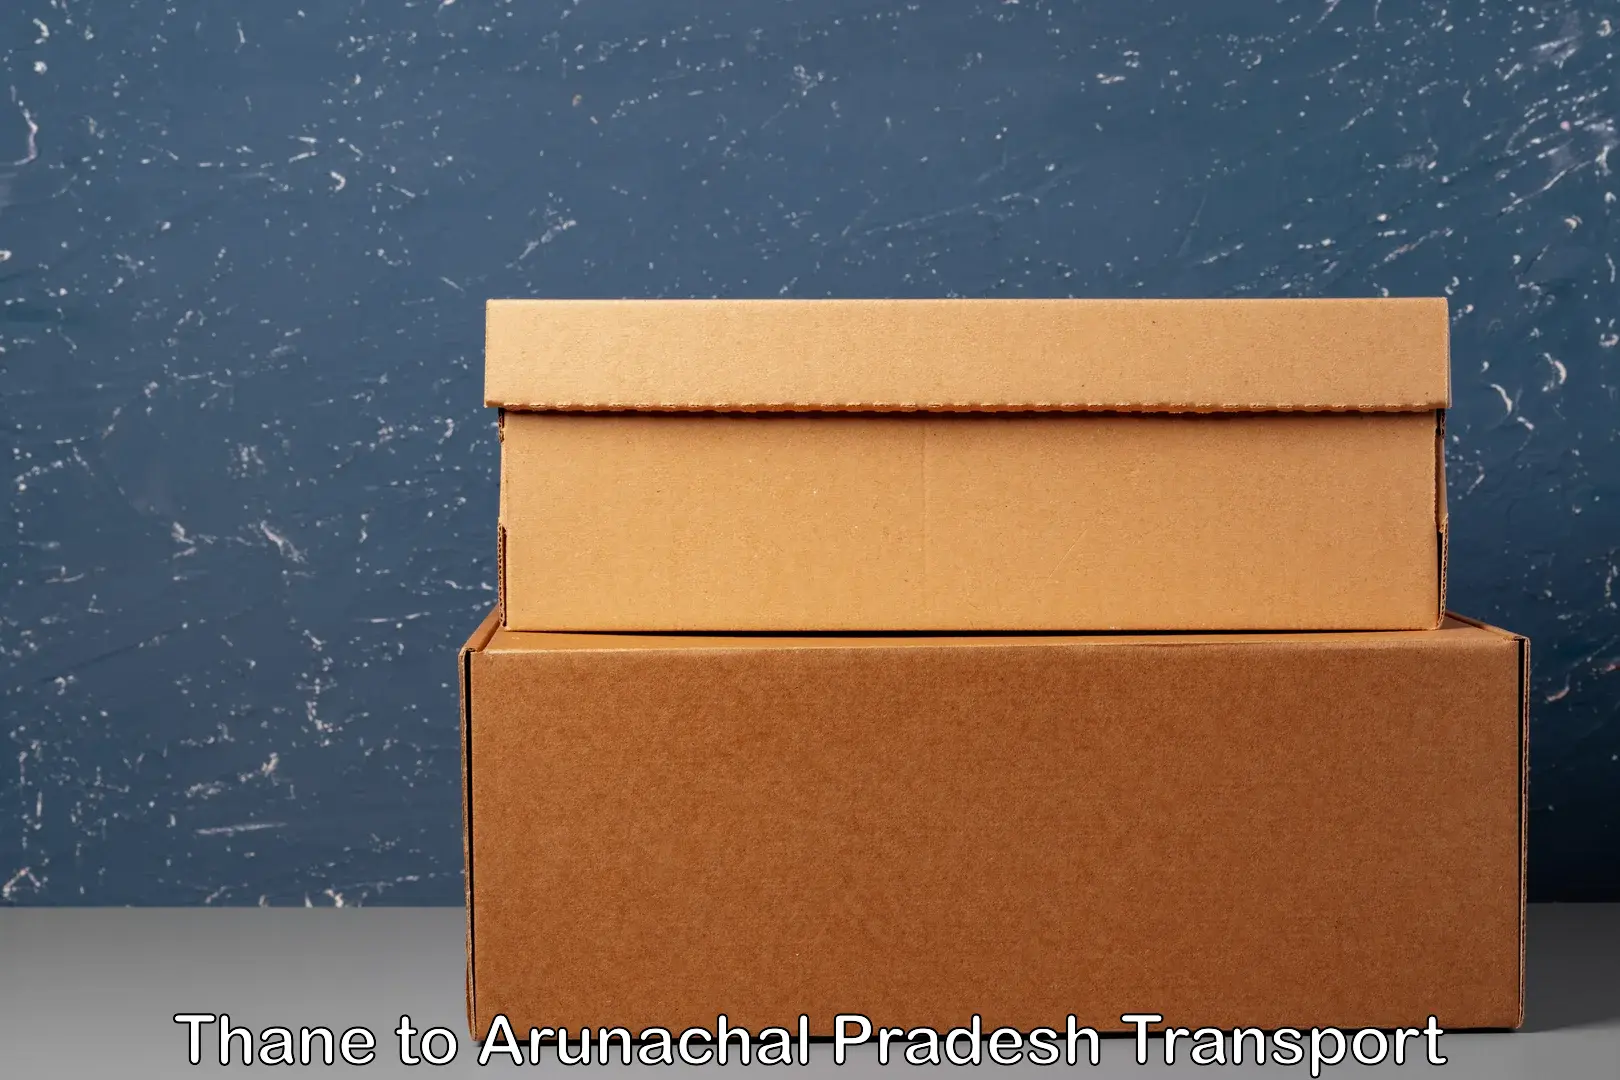 Two wheeler parcel service in Thane to Arunachal Pradesh